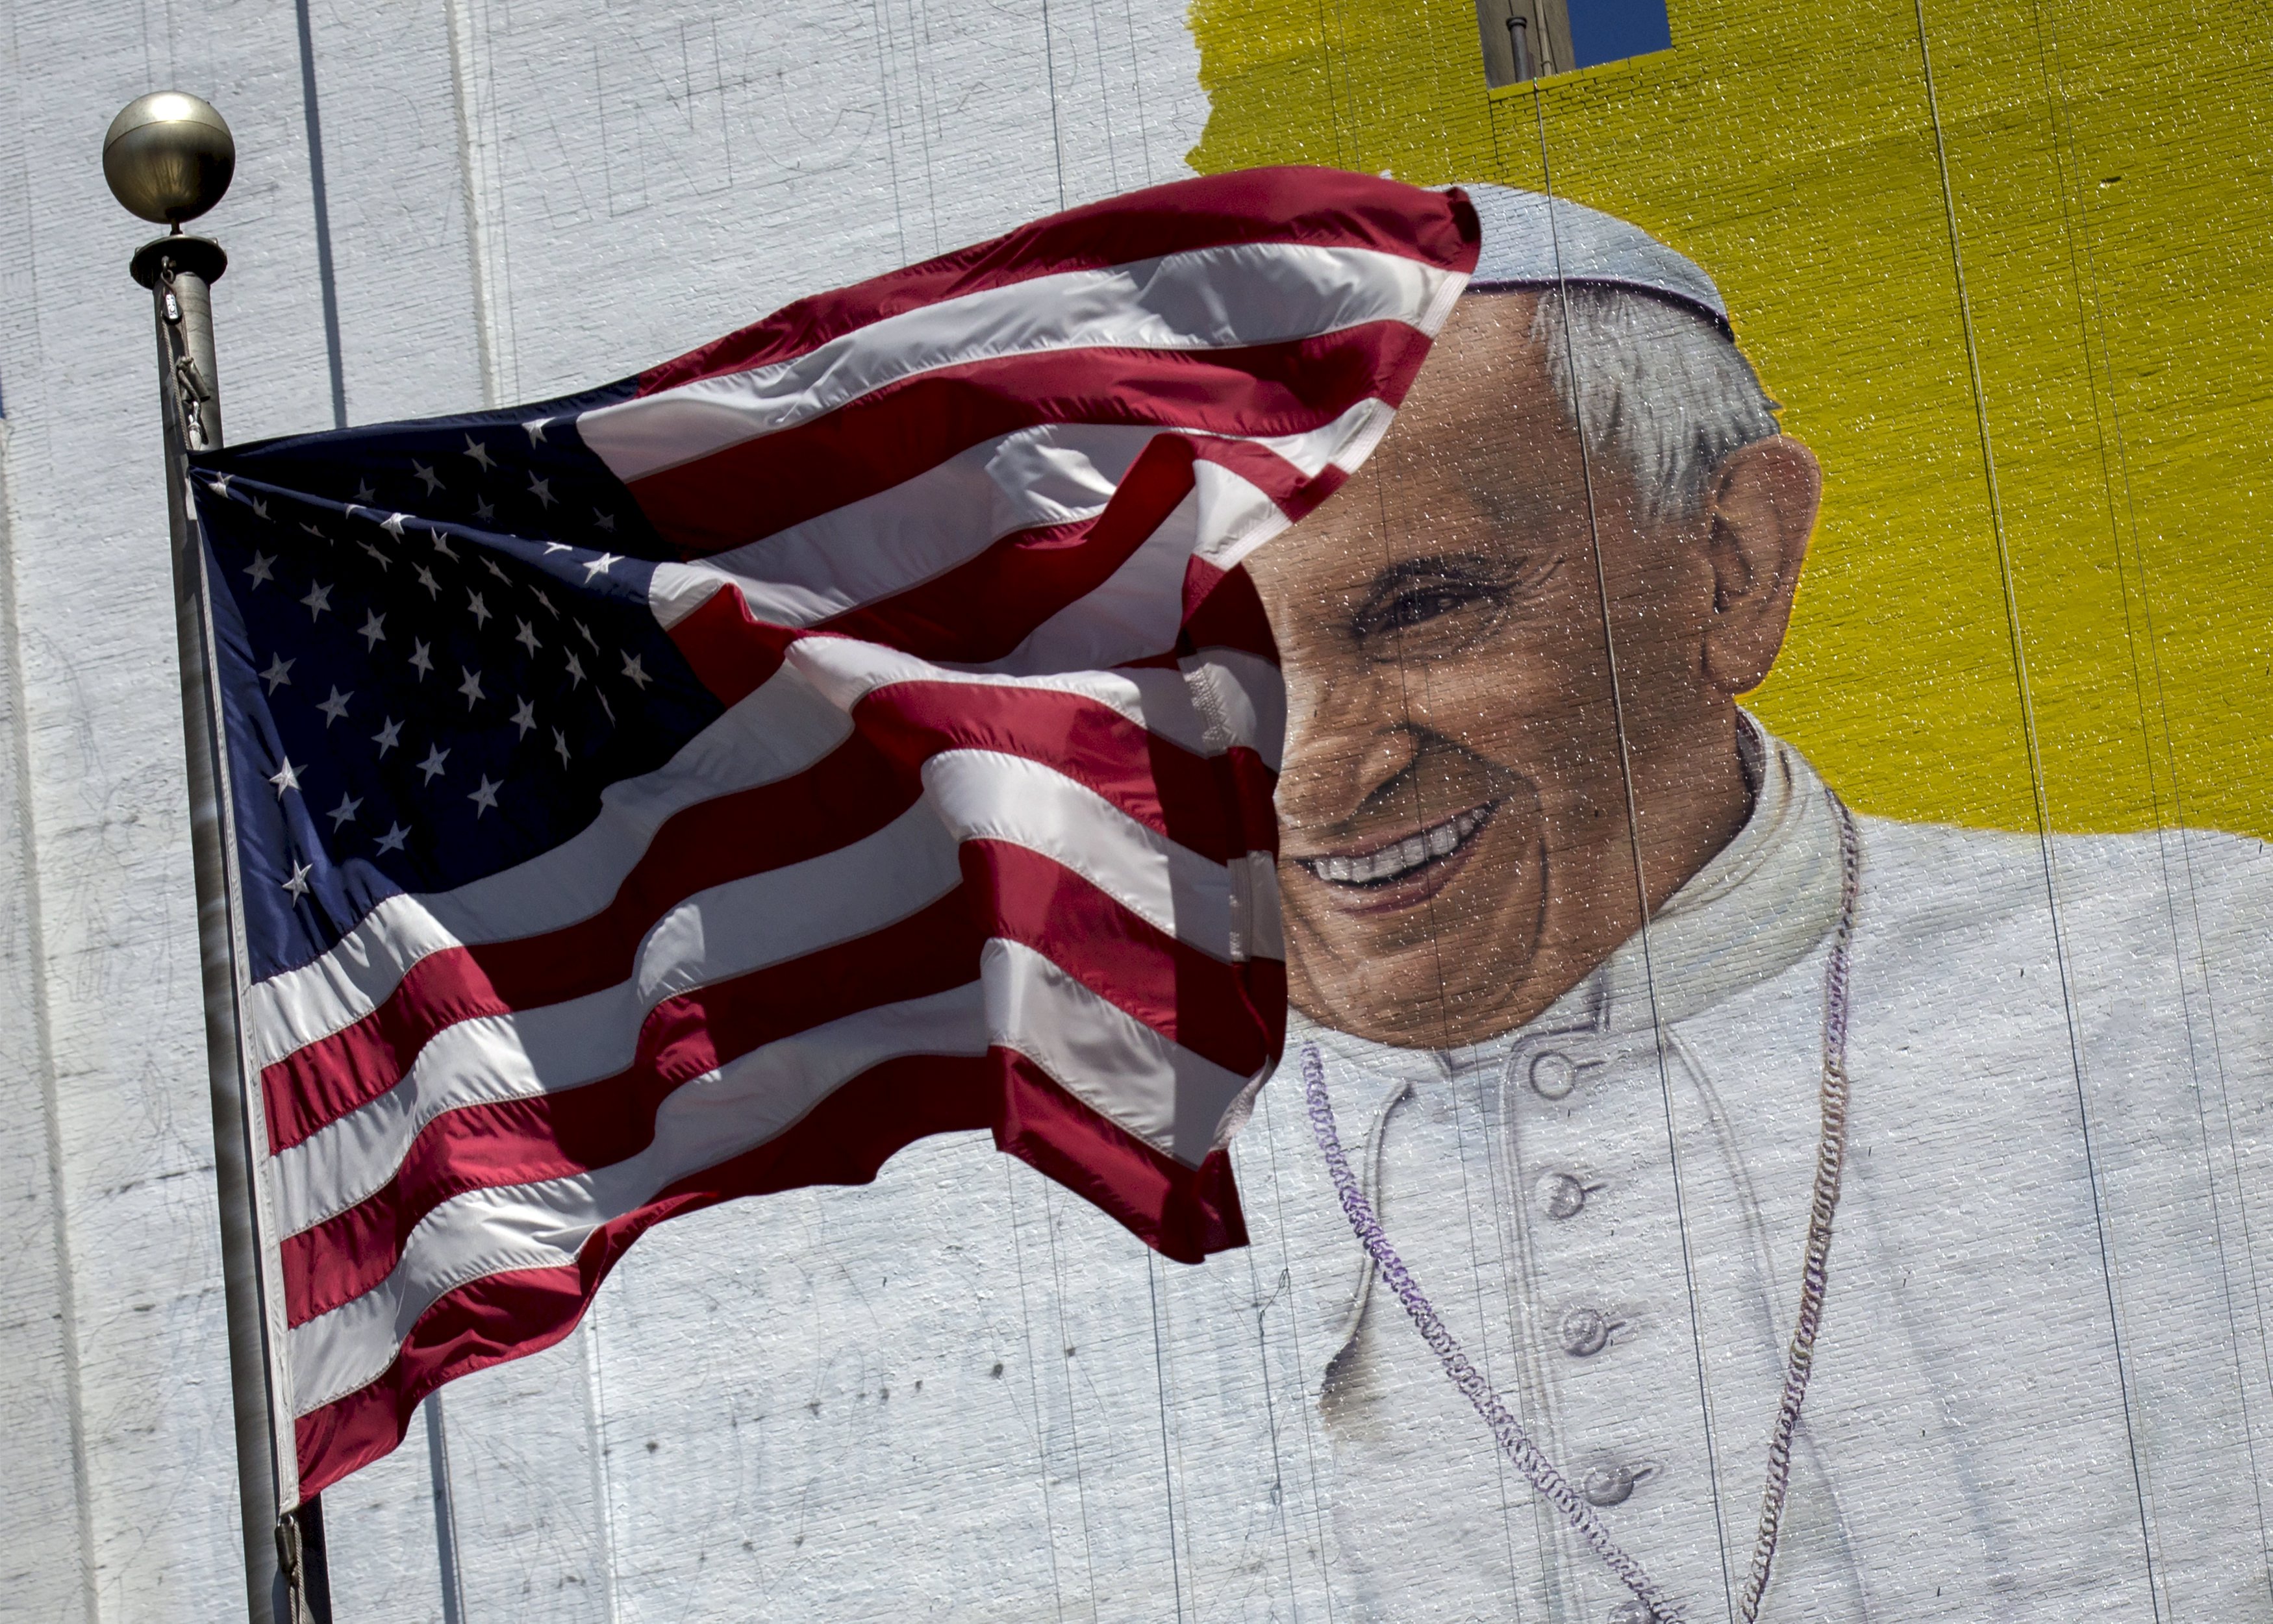 EEUU está listo para la visita papal (Fotos)